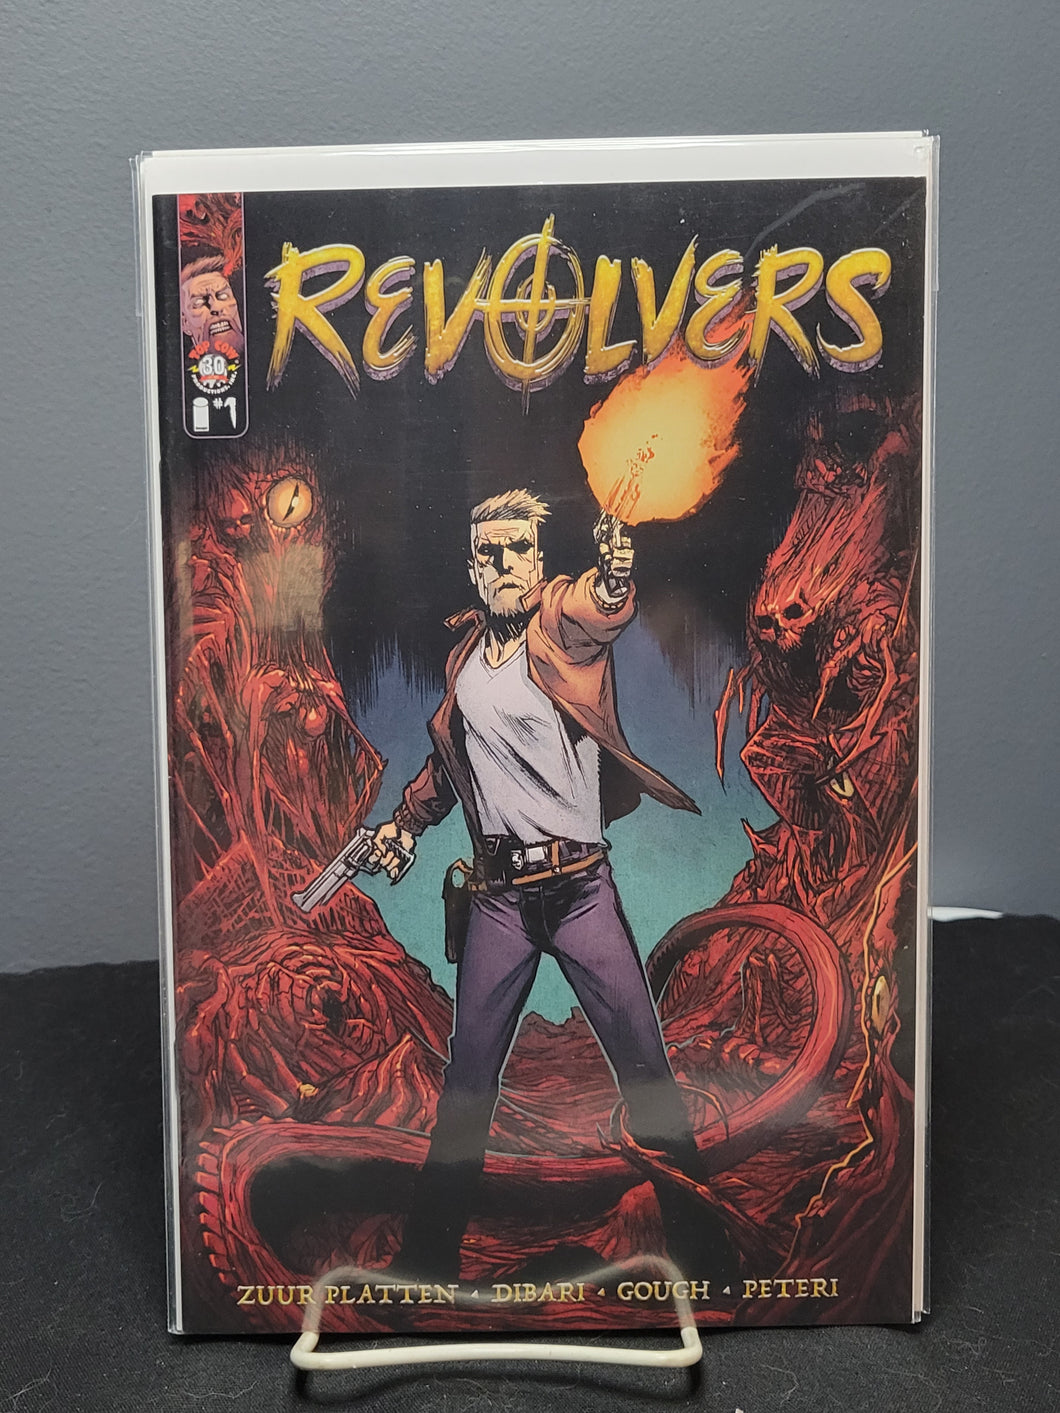 Revolvers #1